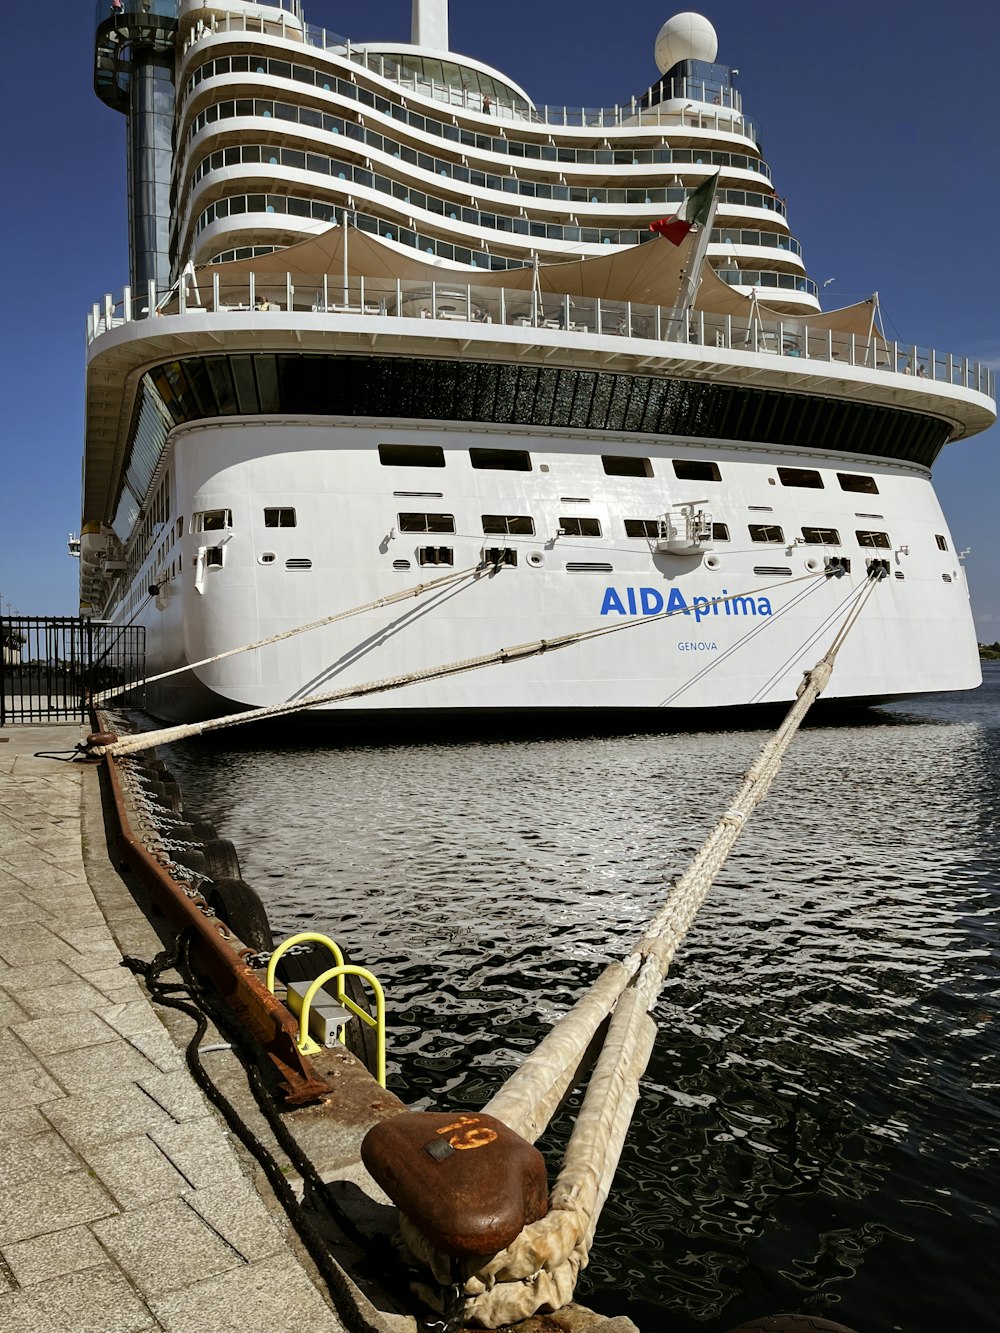 a large cruise ship docked